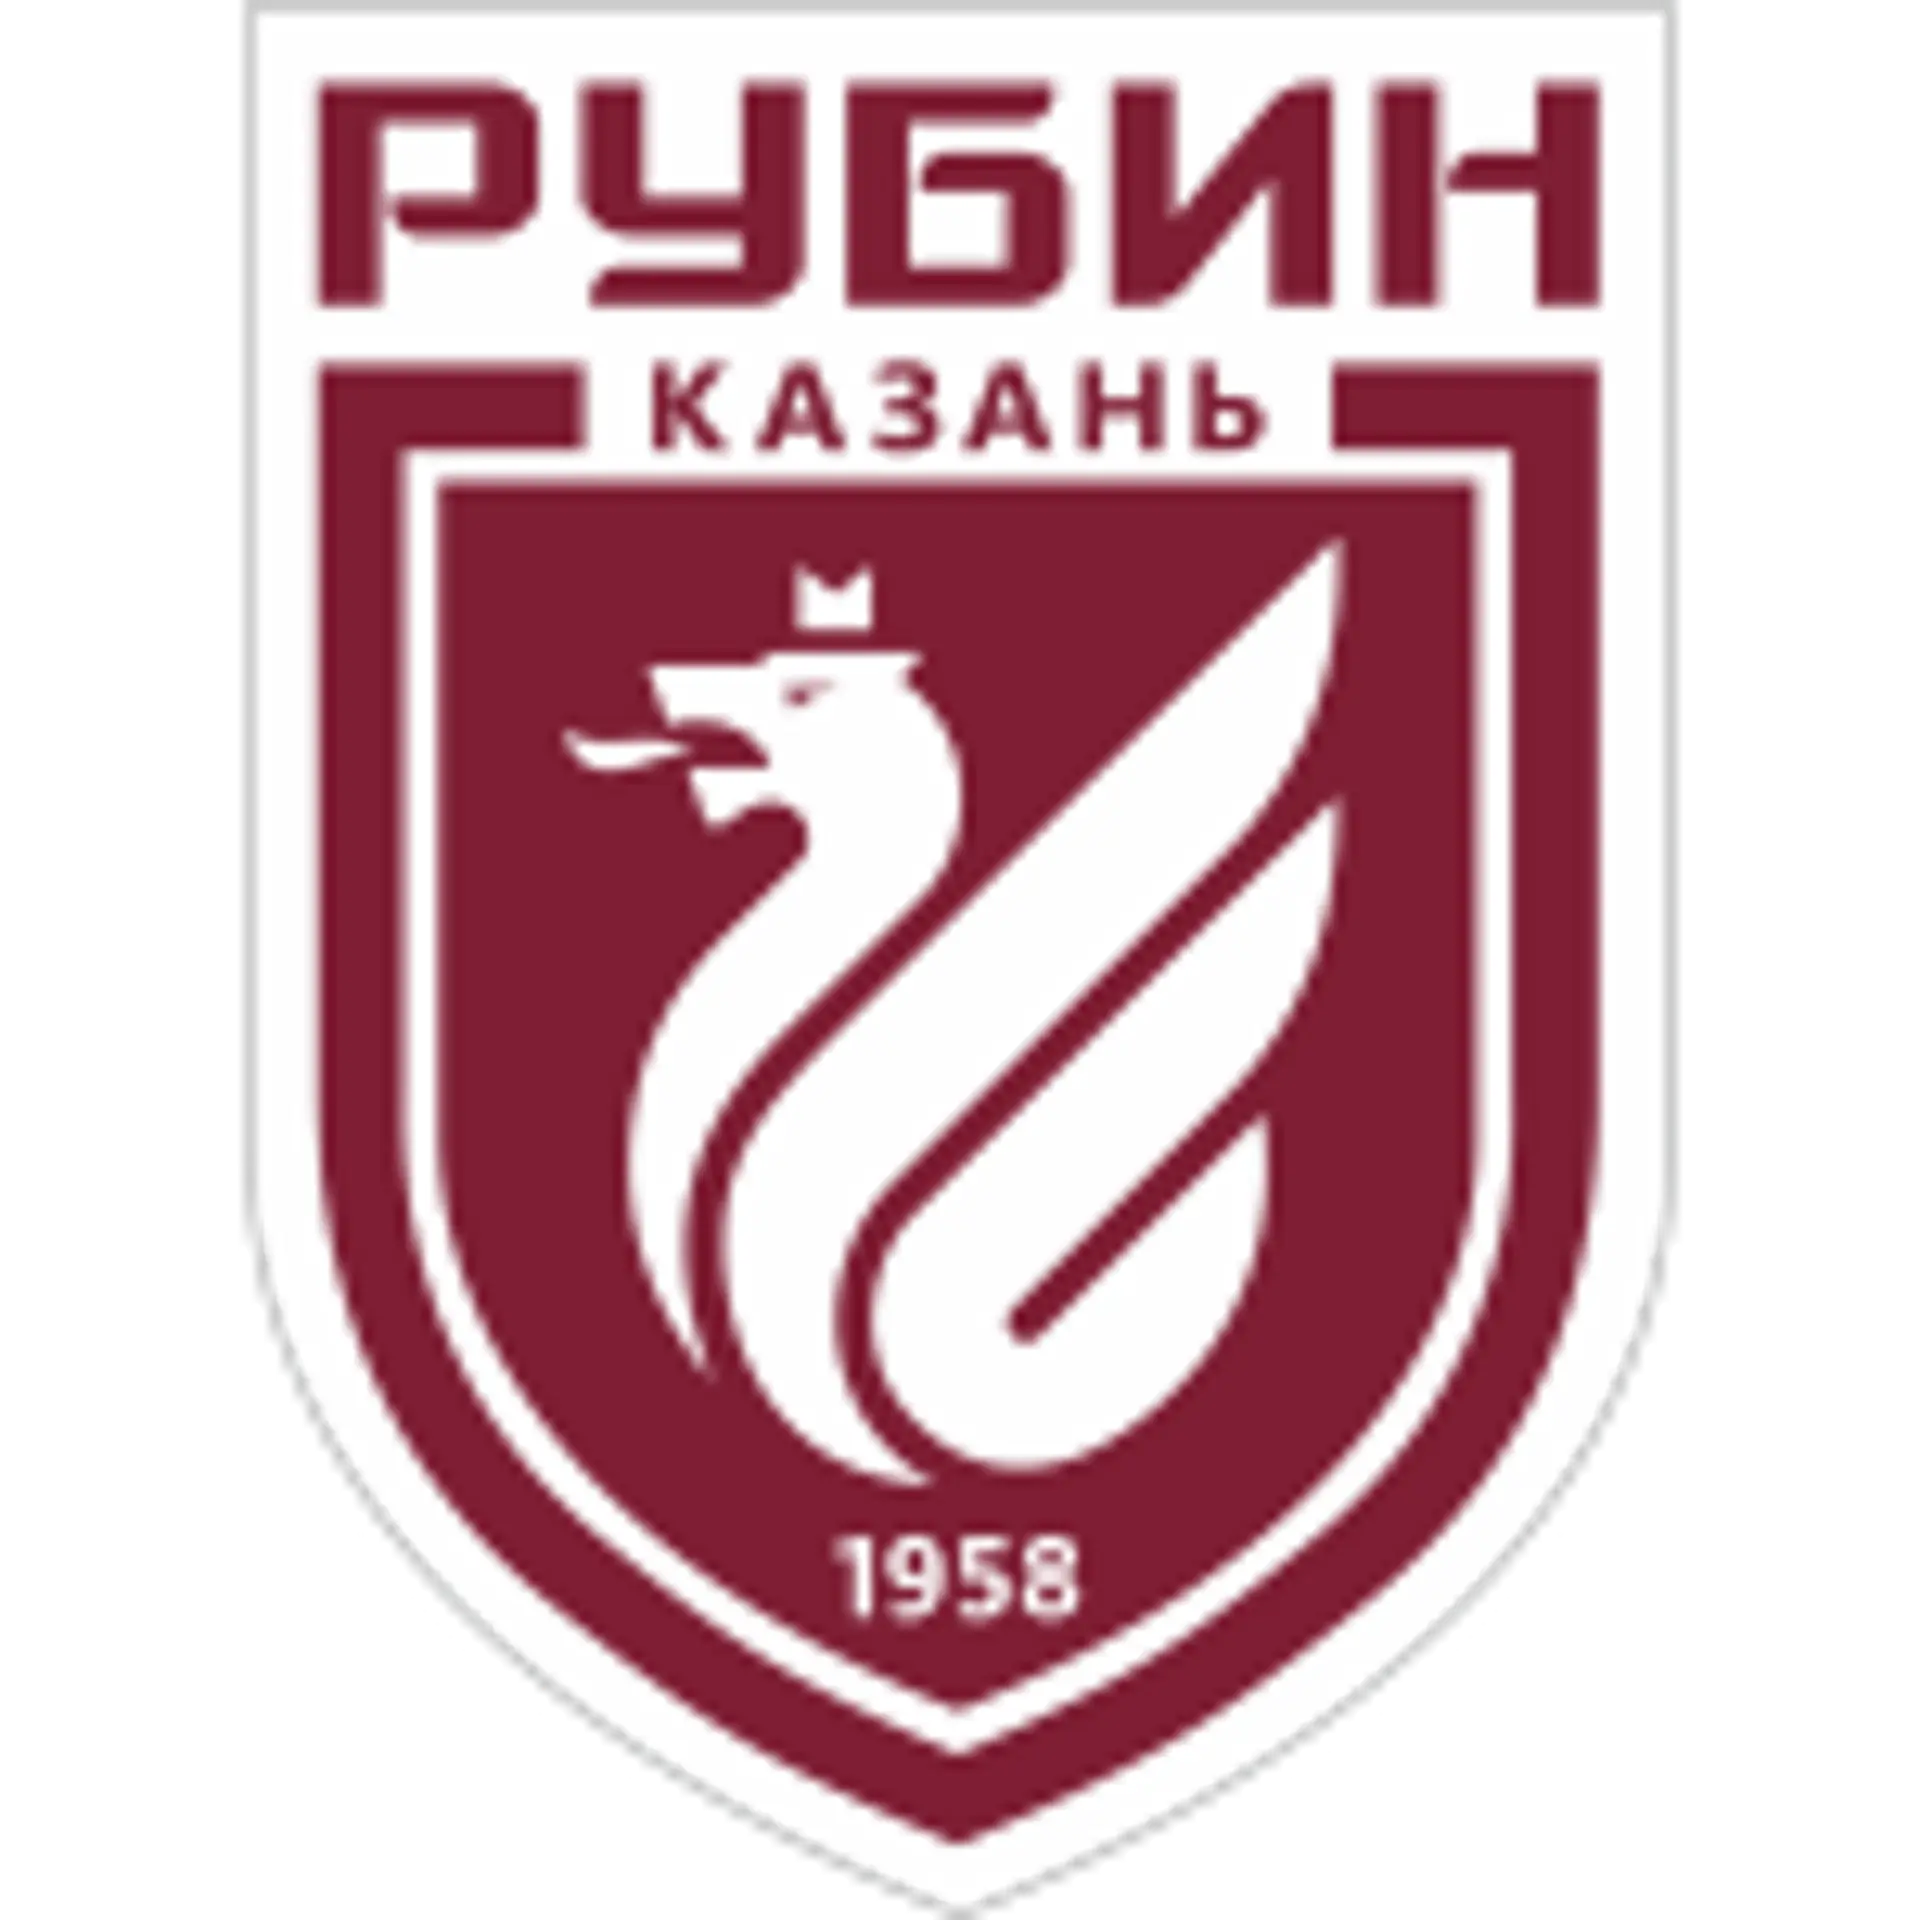 FC Rubin Kazan